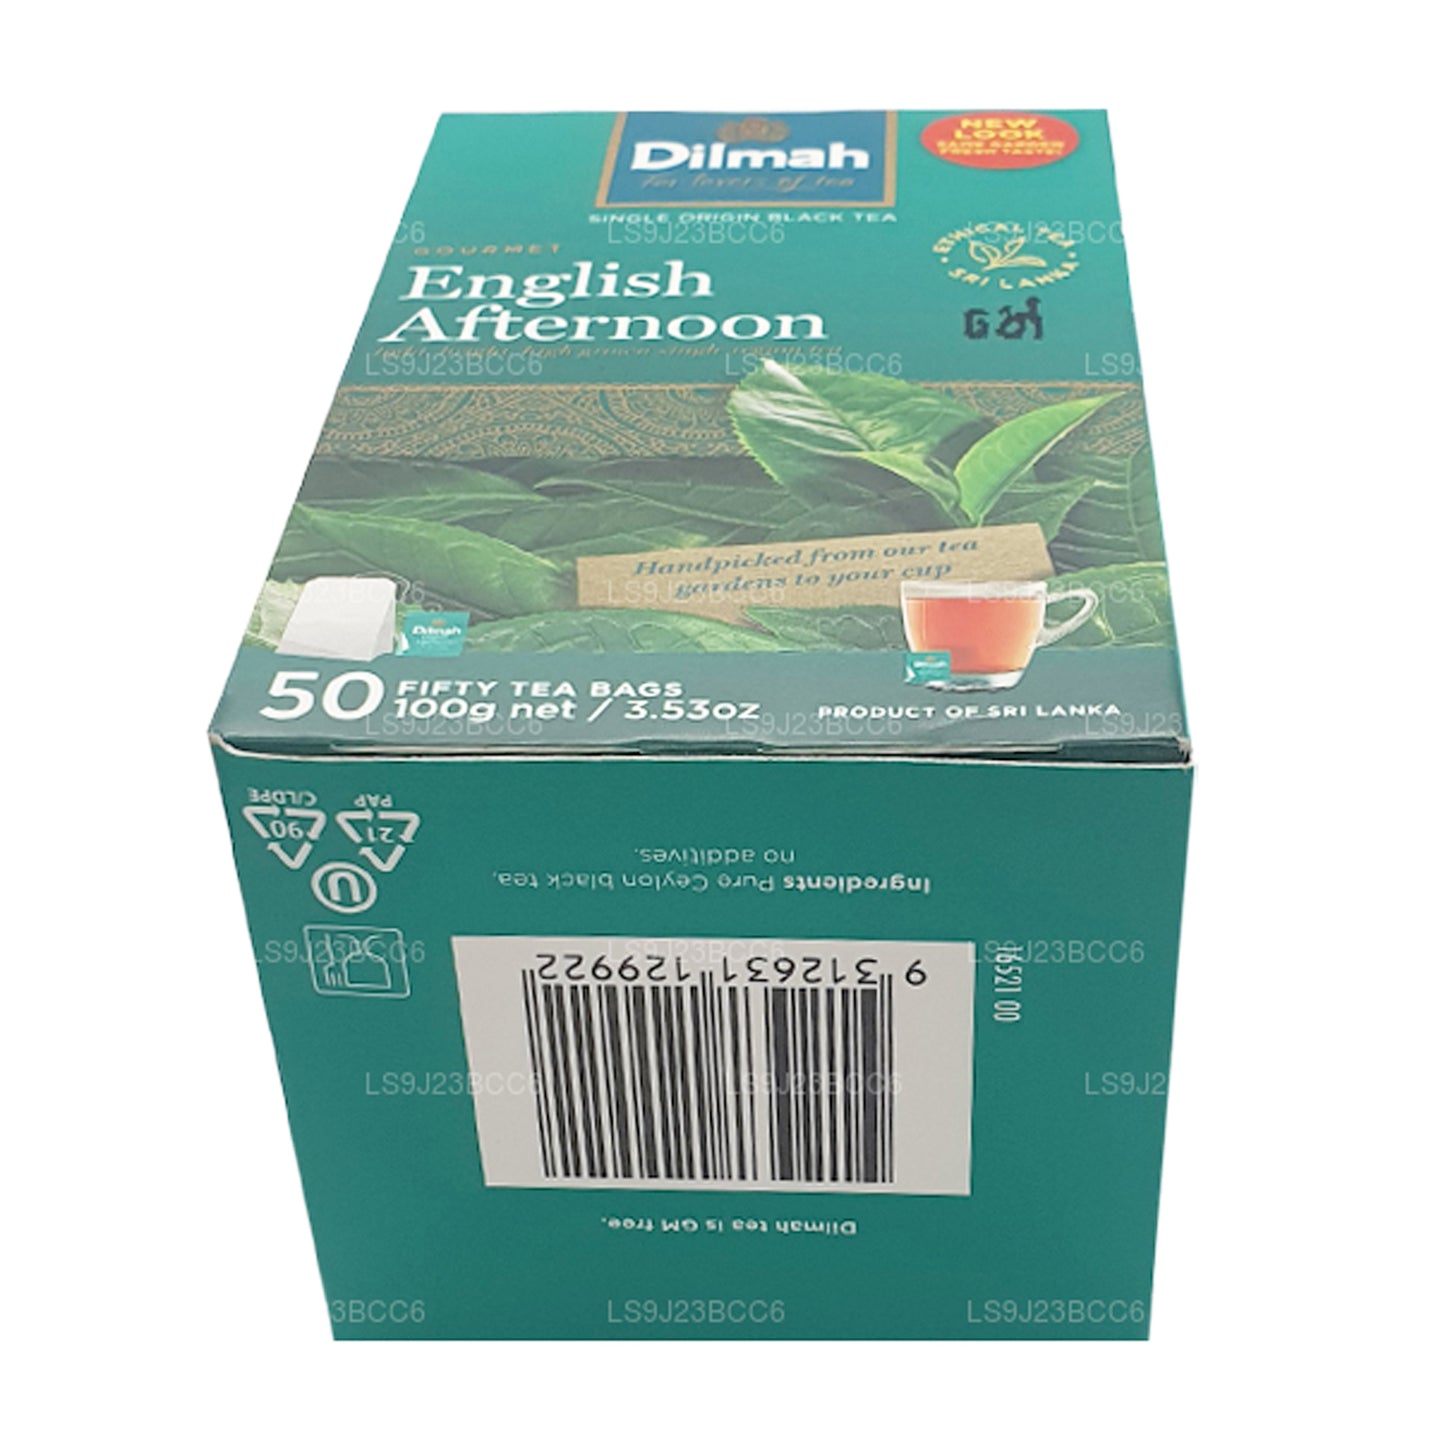 Té de tarde inglés Dilmah, 50 bolsitas de té (100 g)